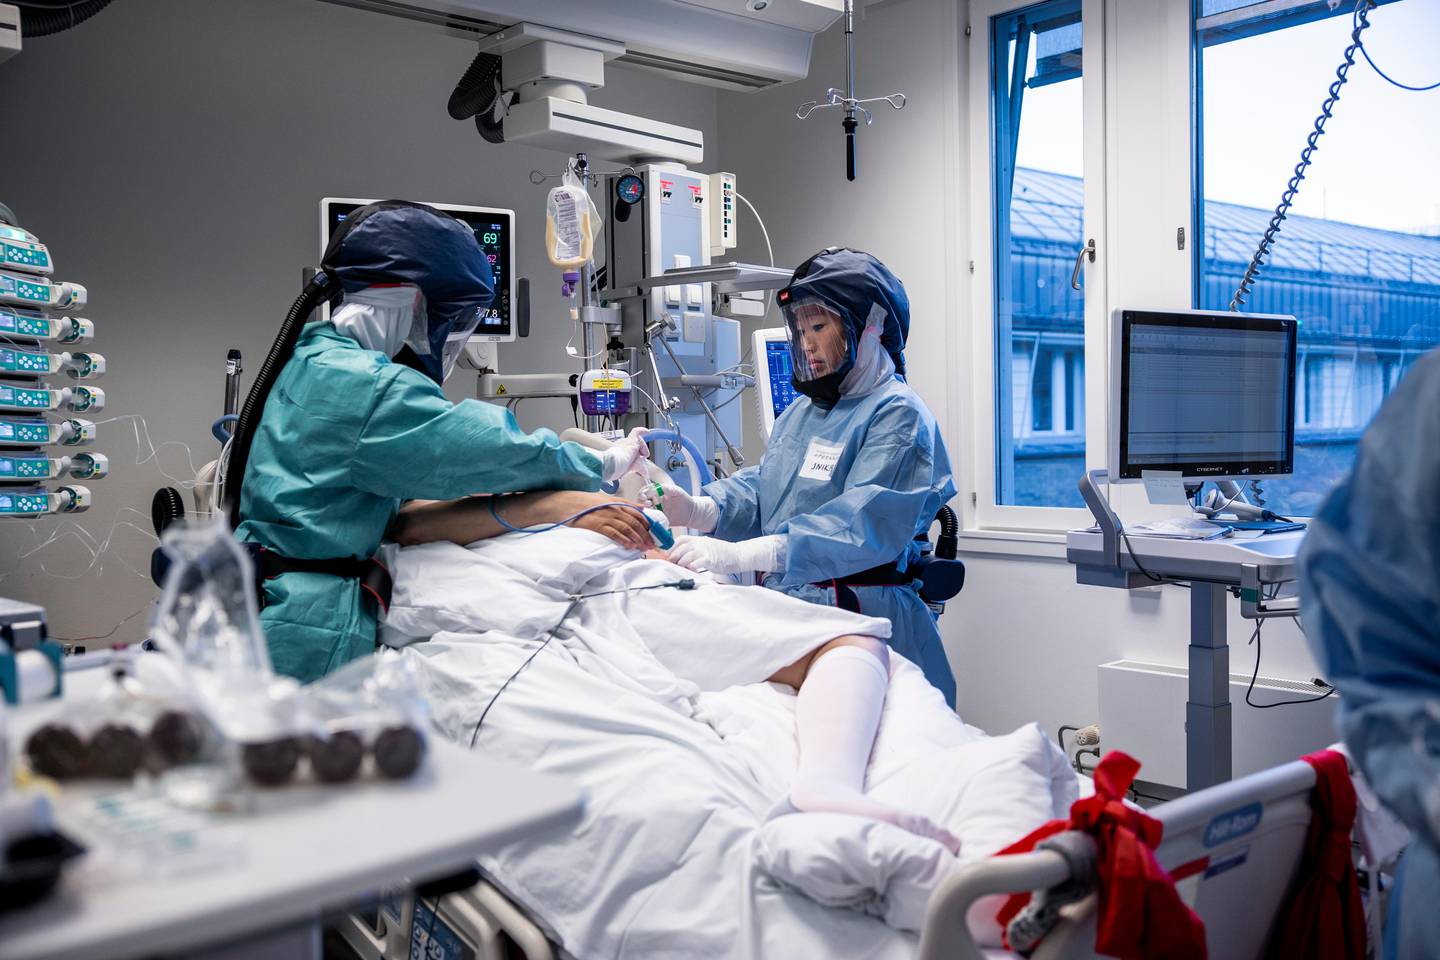 Oslo 20201127
Behandling av pasienter med Covid-19 på intensivavdeling på Oslo Universitetssykehus Rikshospitalet. Søstrene Inika og June Flaa jobber sammen med en pasient. 
Foto: Jil Yngland / NTB